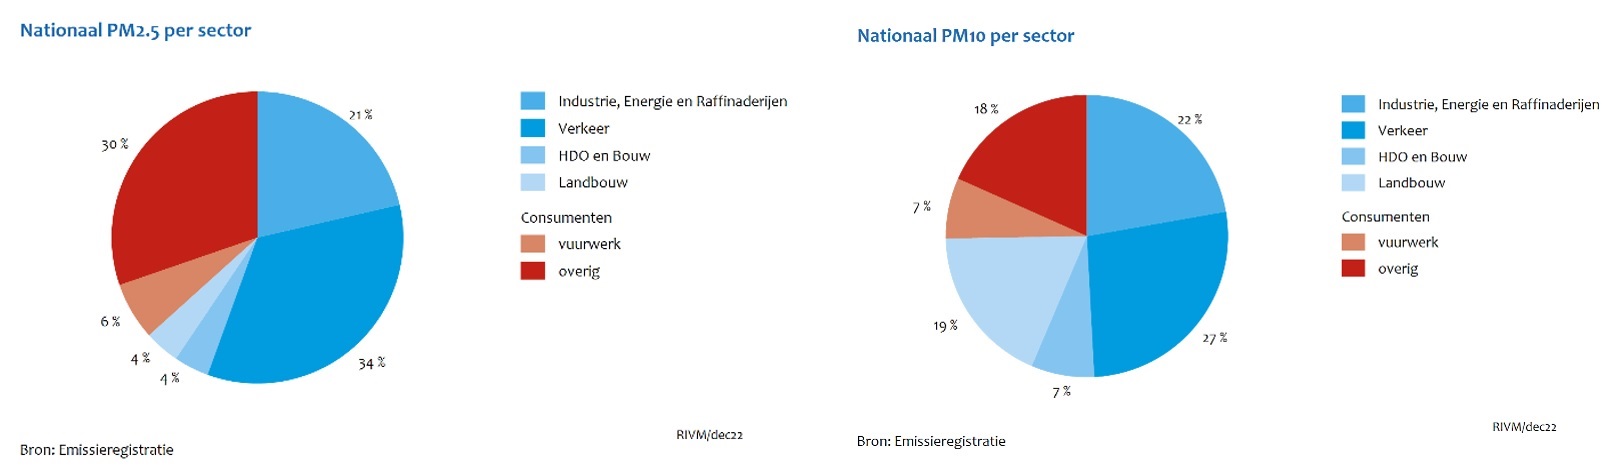 Nationaal PM2,5 en PM10 per sector